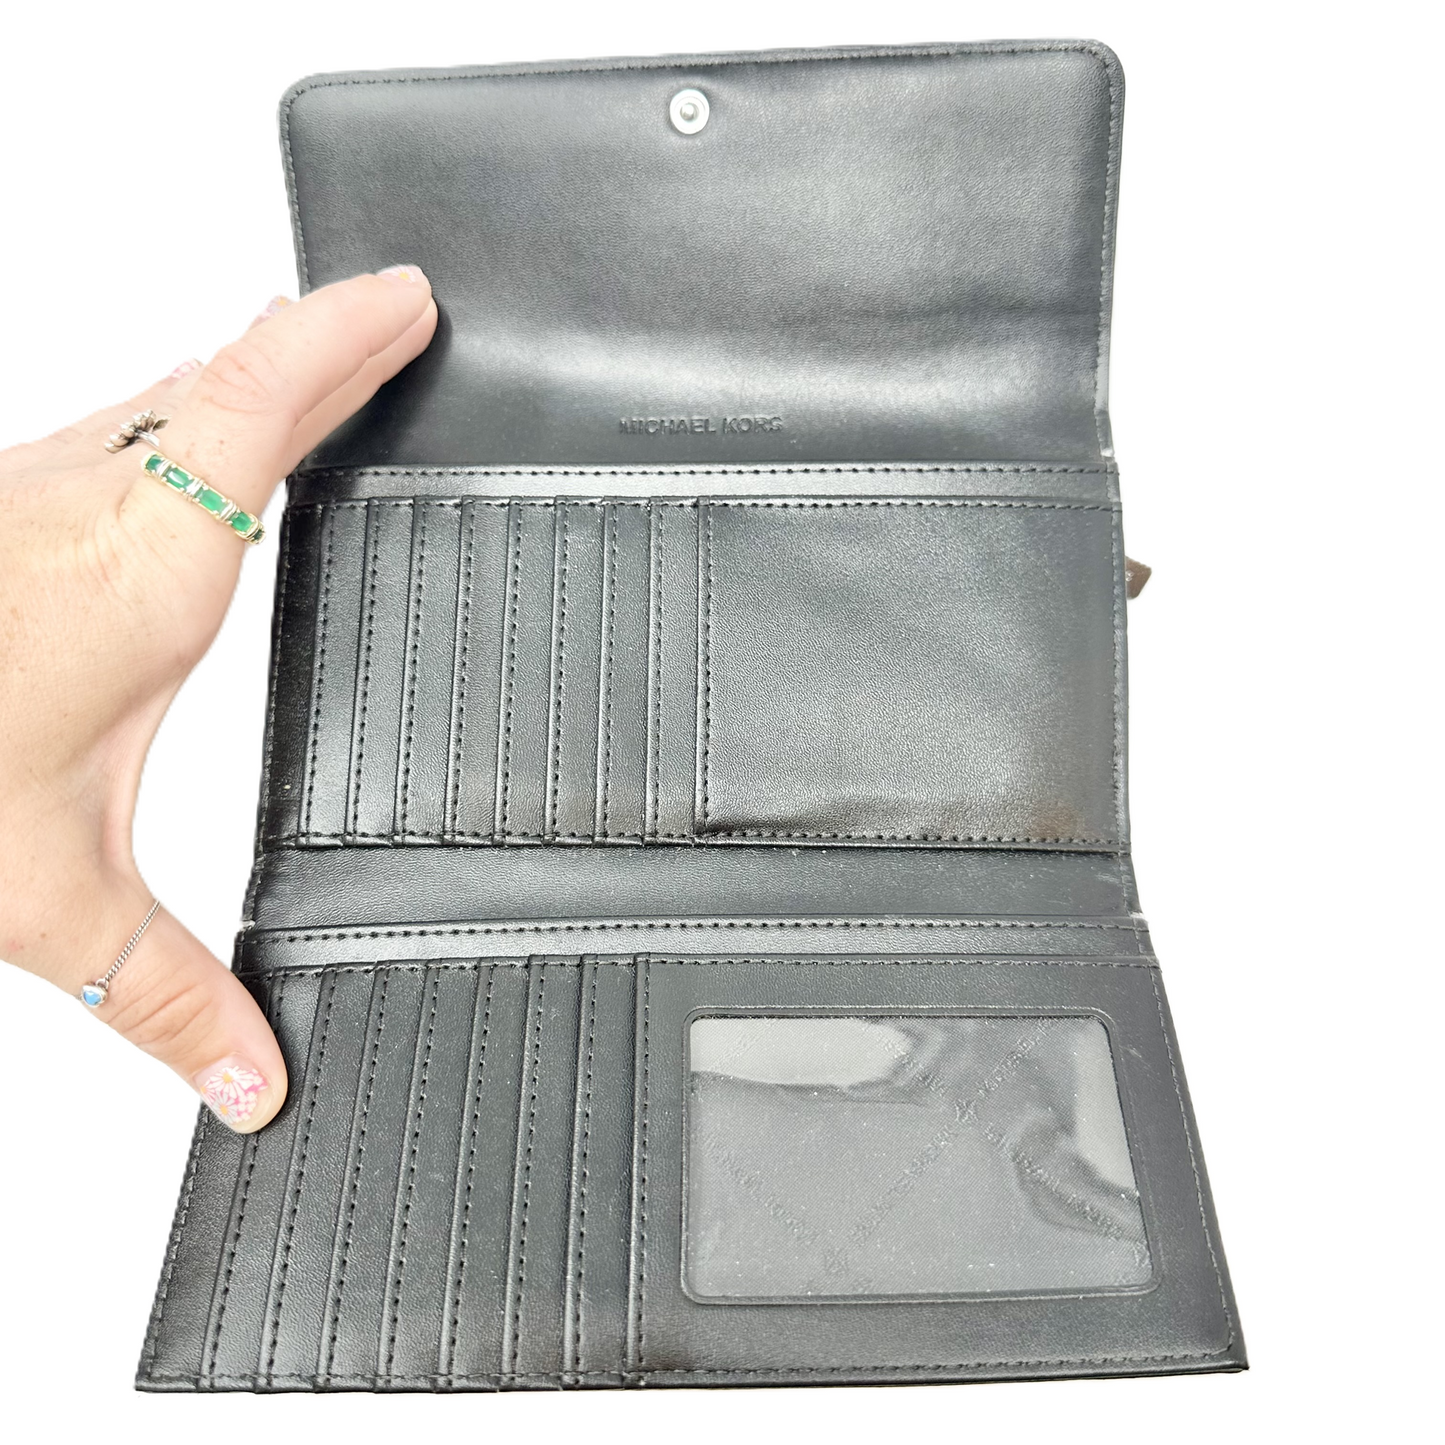 Wallet Designer By Michael Kors, Size: Large